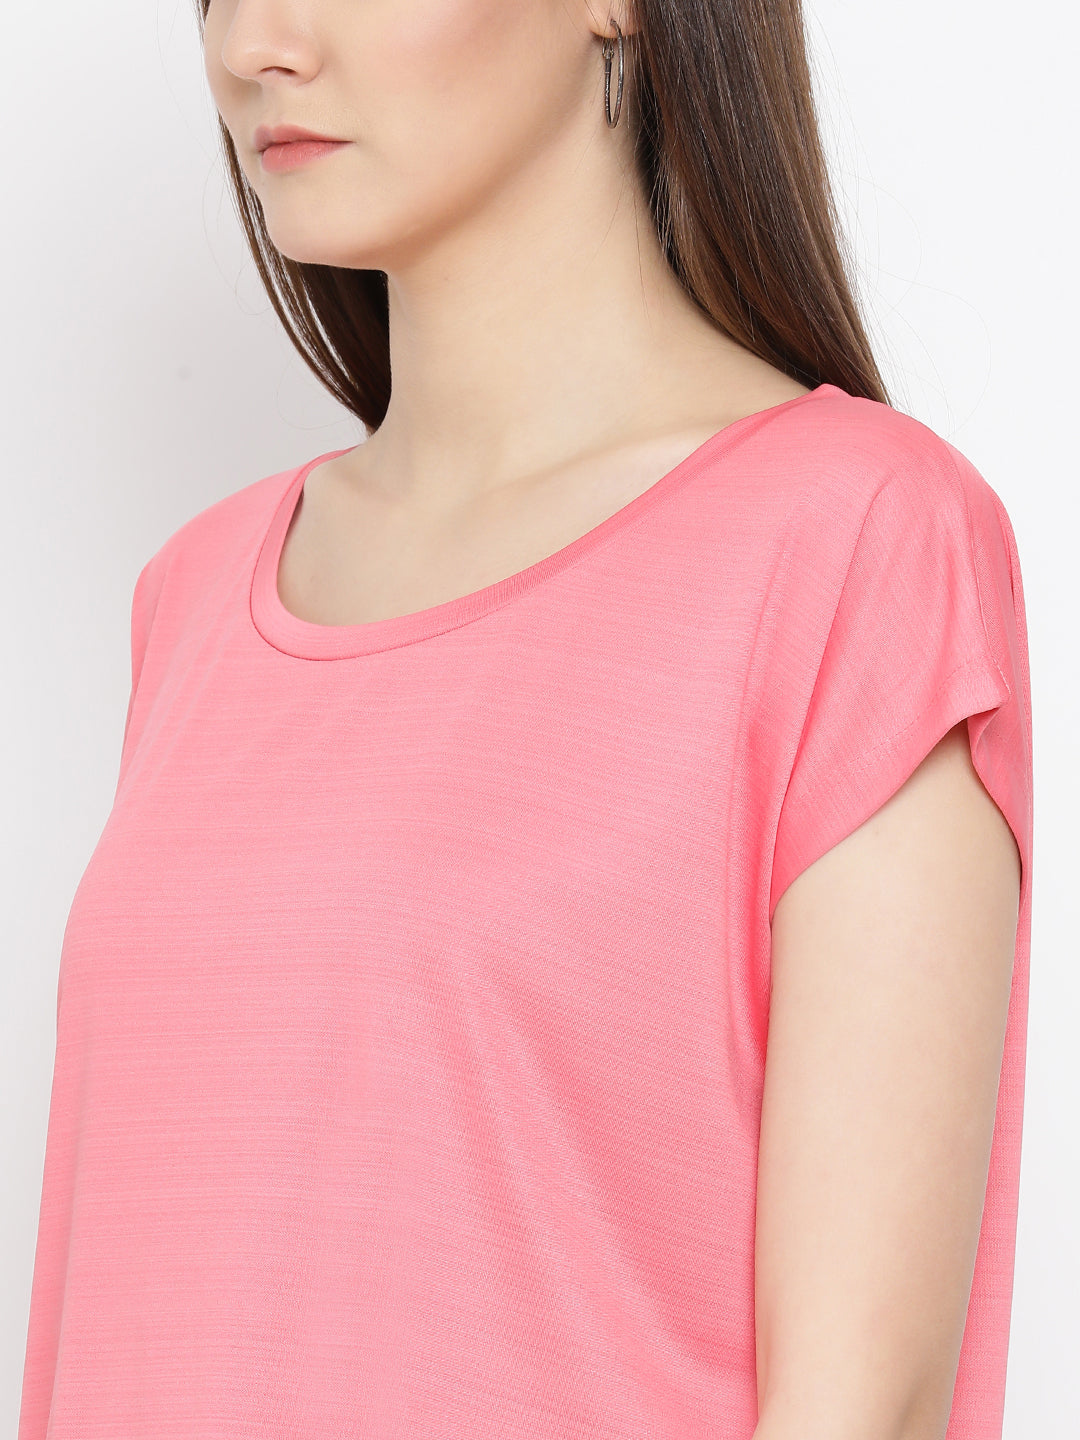 Pink T-Shirt - Women T-Shirts